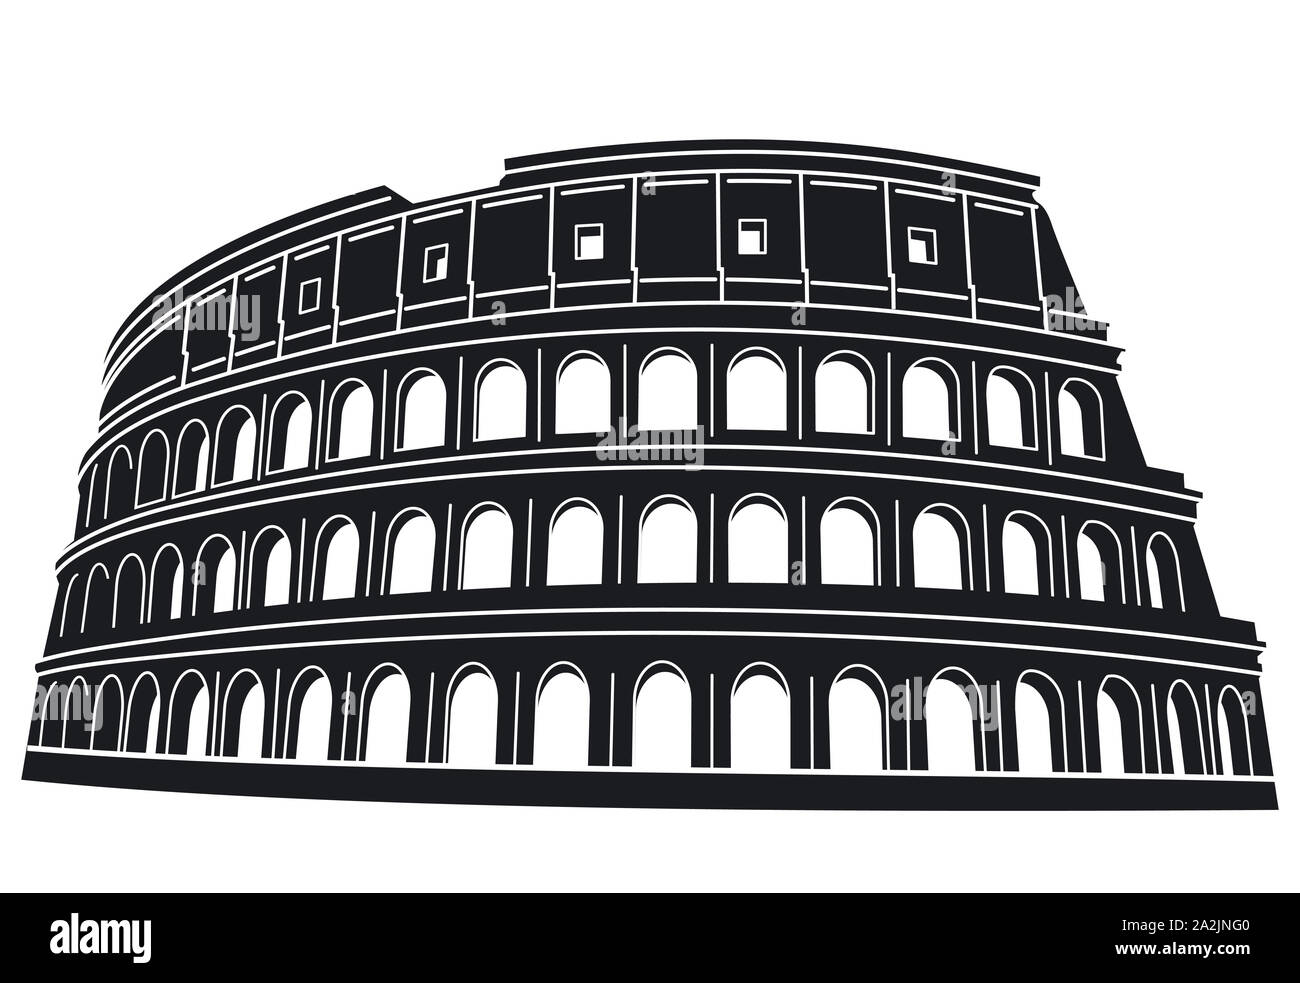 Das Kolosseum, das Wahrzeichen in Rom, Abbildung Stockfoto